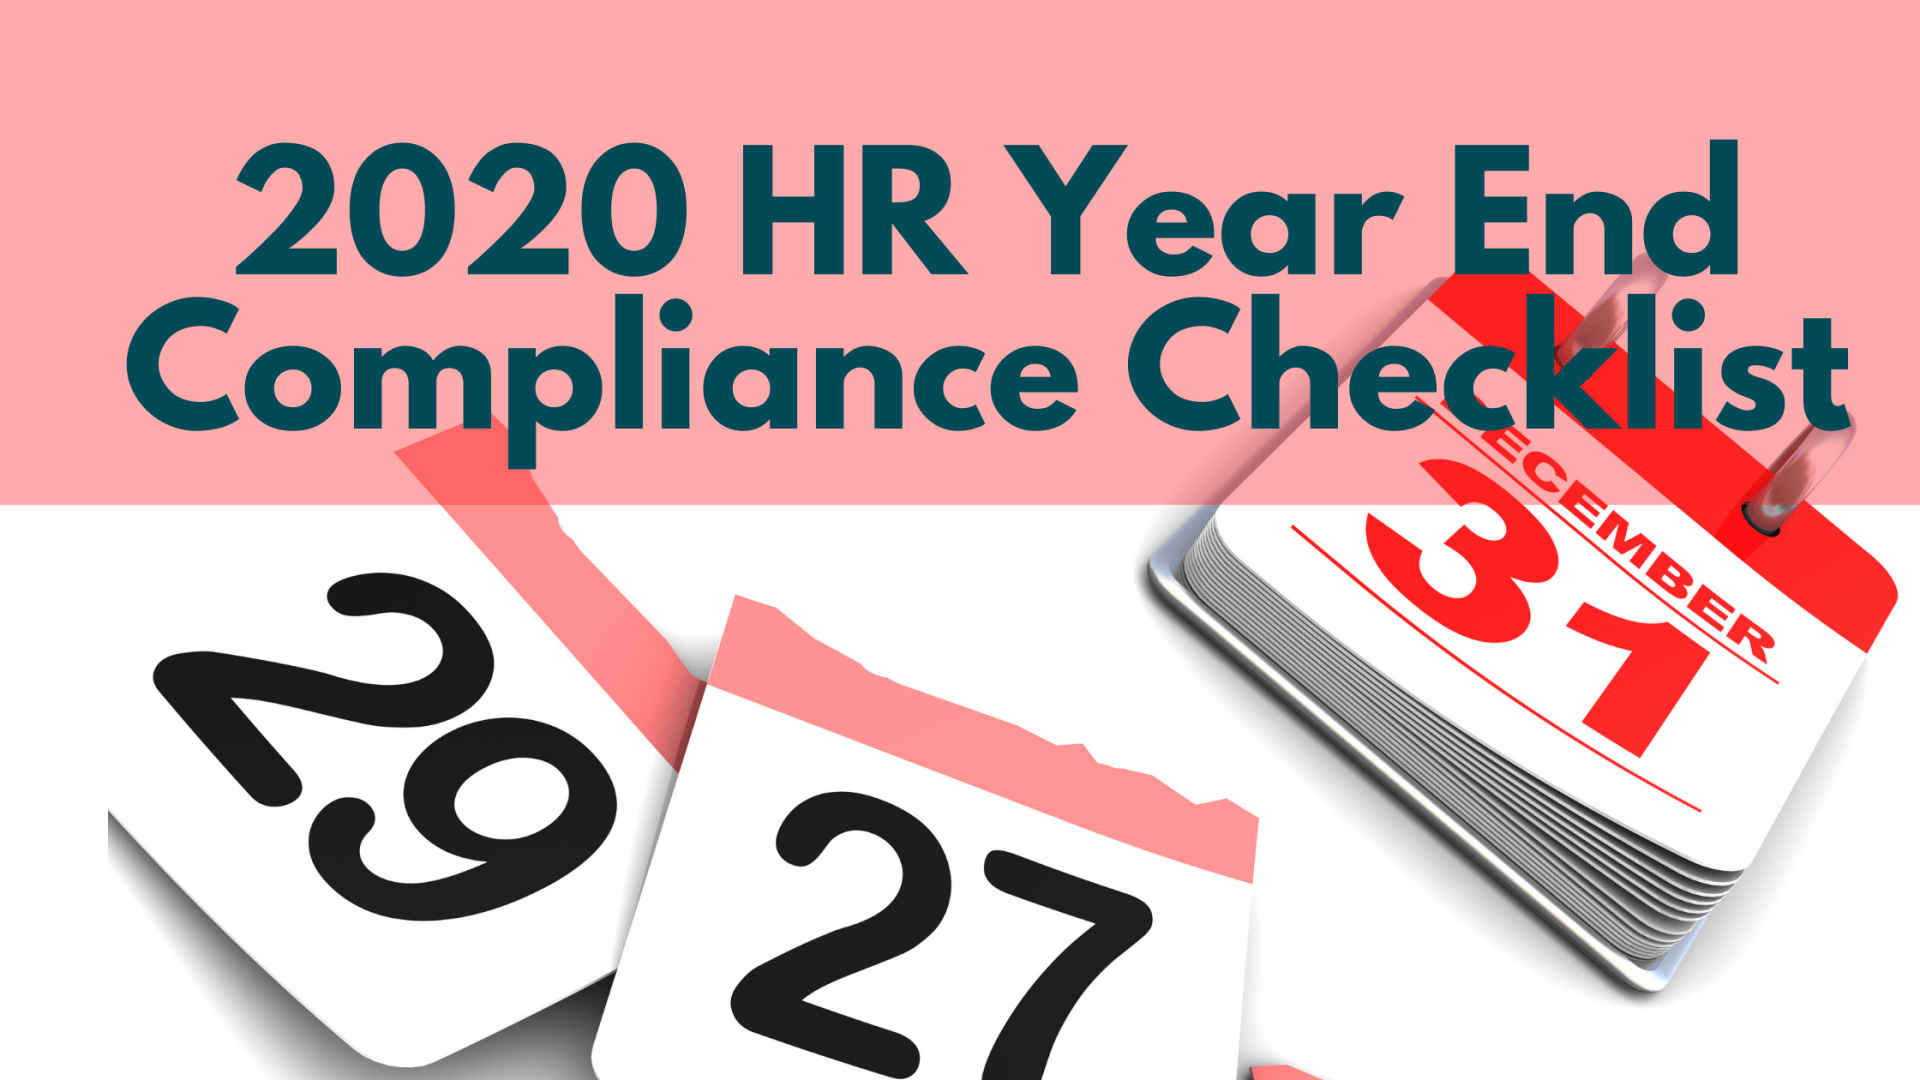 2020 Year End HR Compliance Checklist